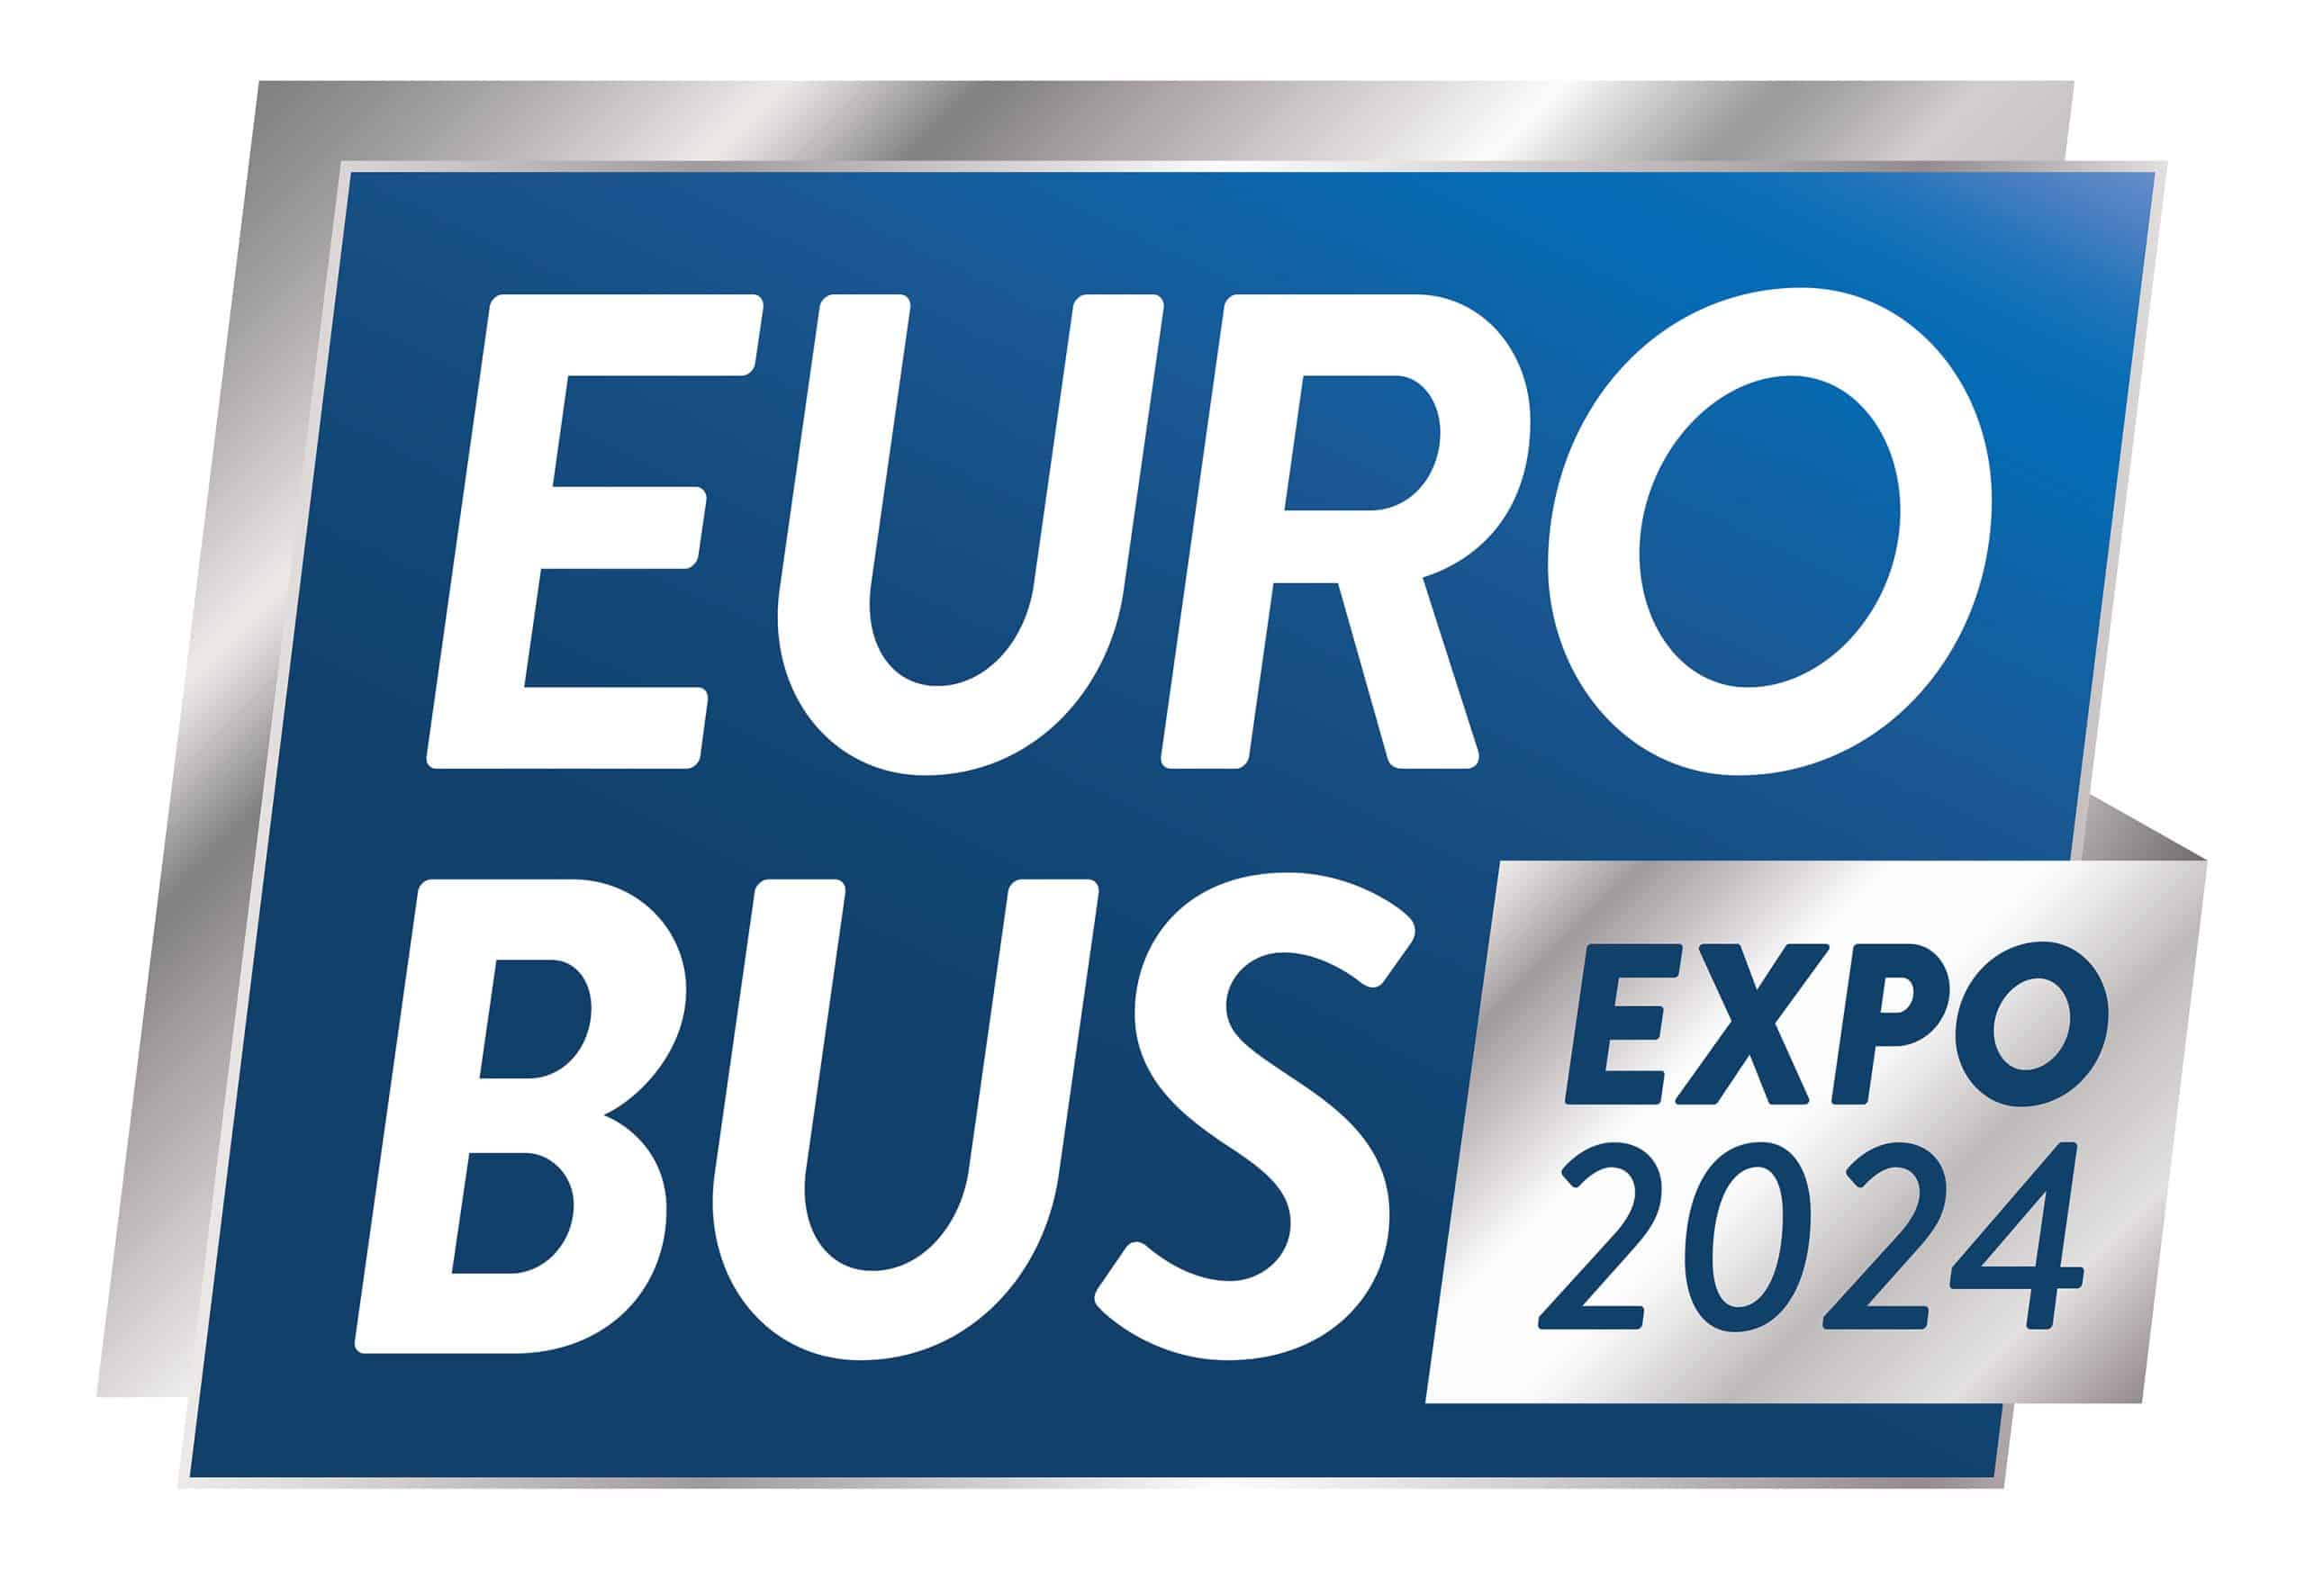 Euro Bus Expo Logo